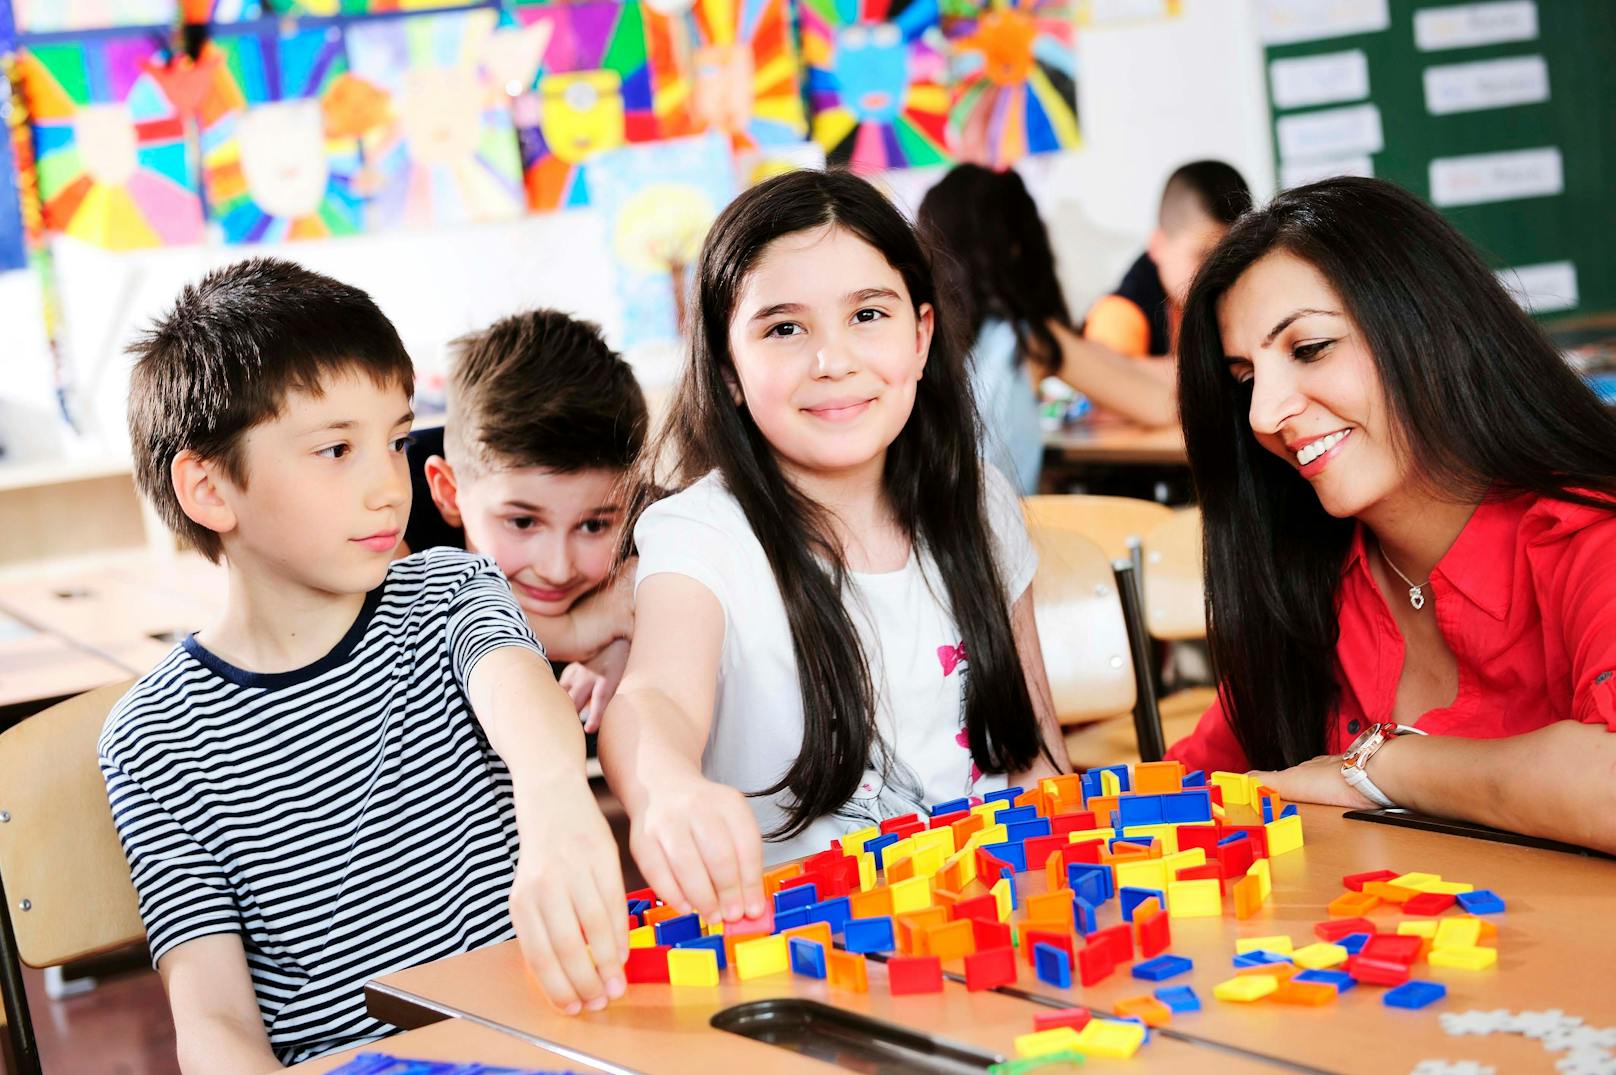 Die Stadt Wien bietet während der Semesterferien von 7. bis 11. Februar 2022 kostengünstige Betreuung für Schulkinder zwischen 6 und 14 Jahren an.